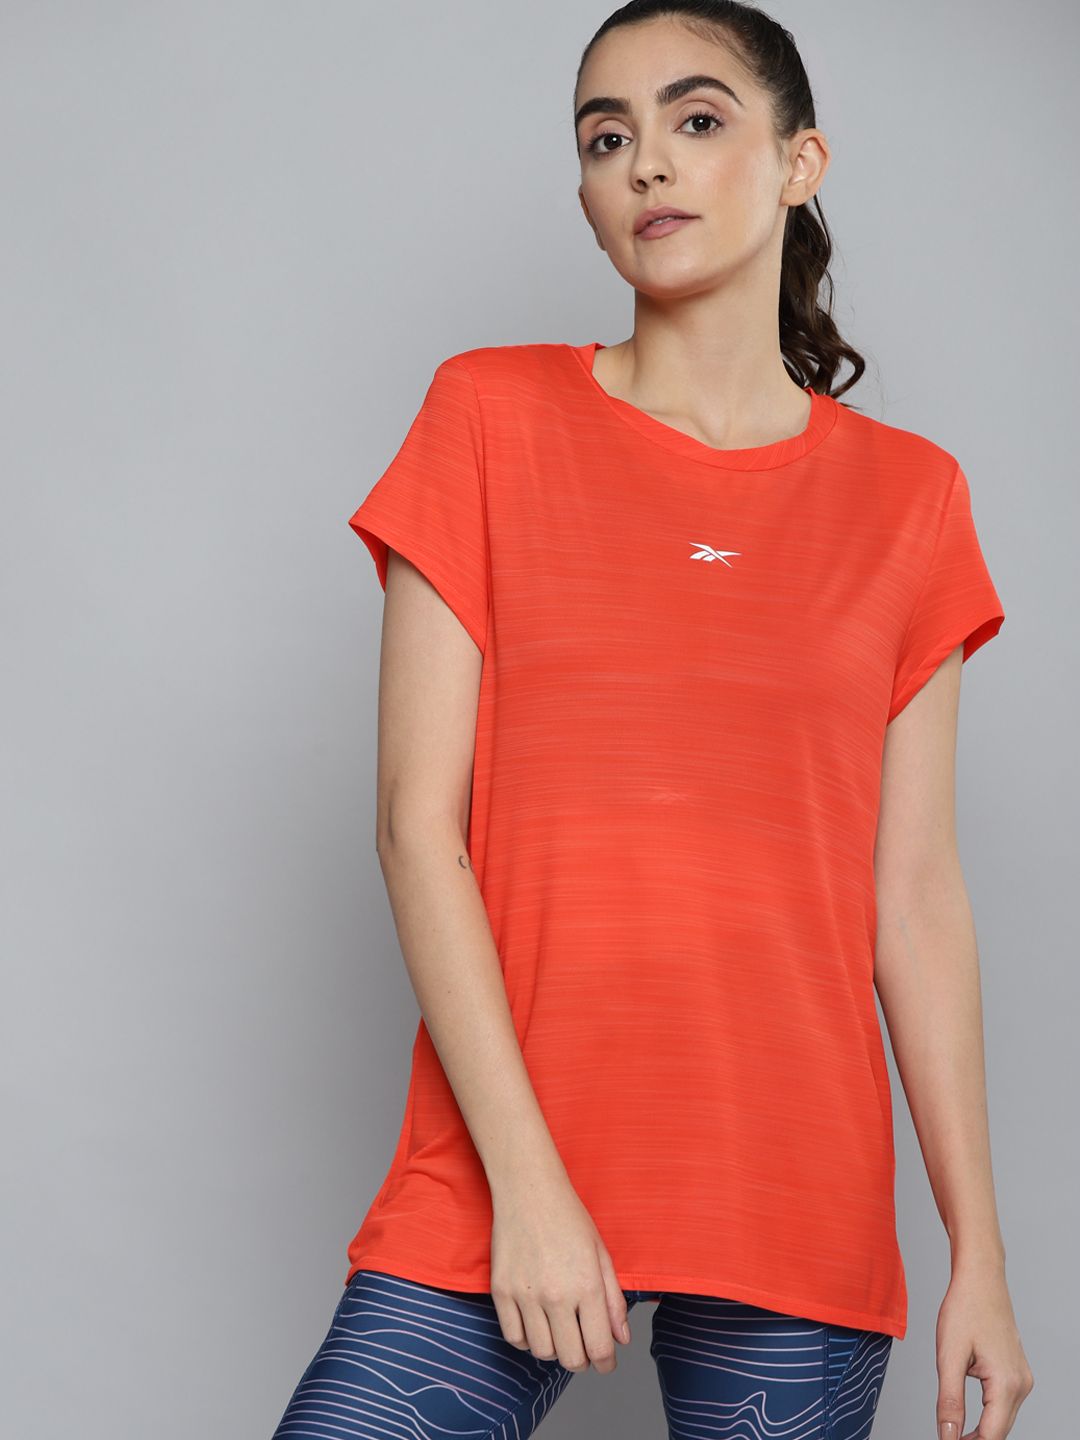 Reebok Women Coral Orange WOR AC Tee T-shirt Price in India